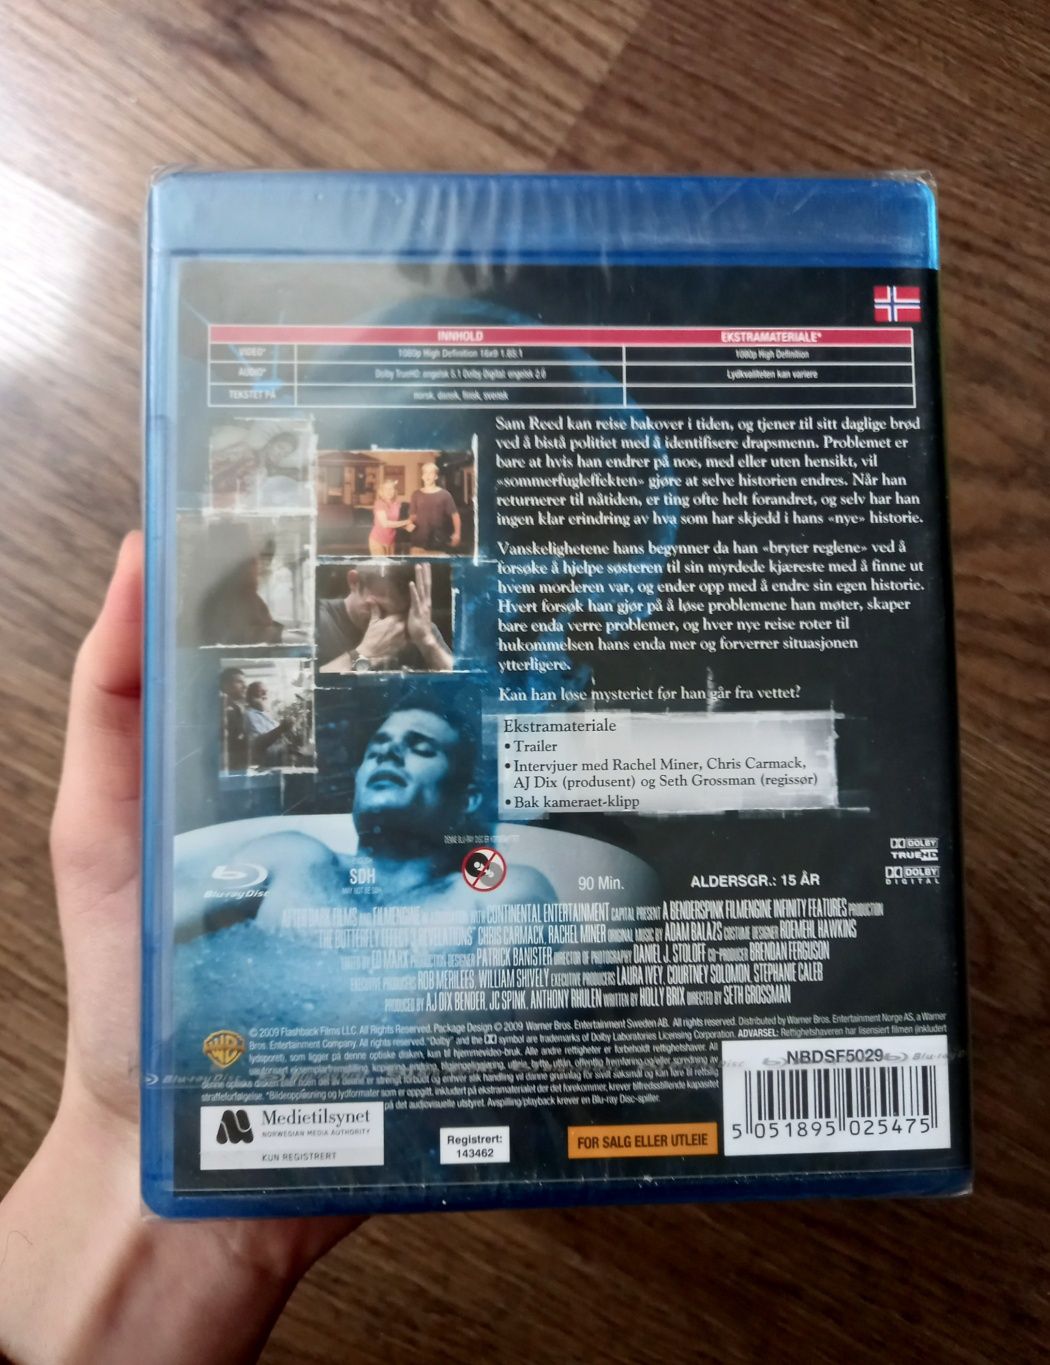 Film DVD blu-ray NOWY Butterfly Effect 3 angielski norweski szwedzkii